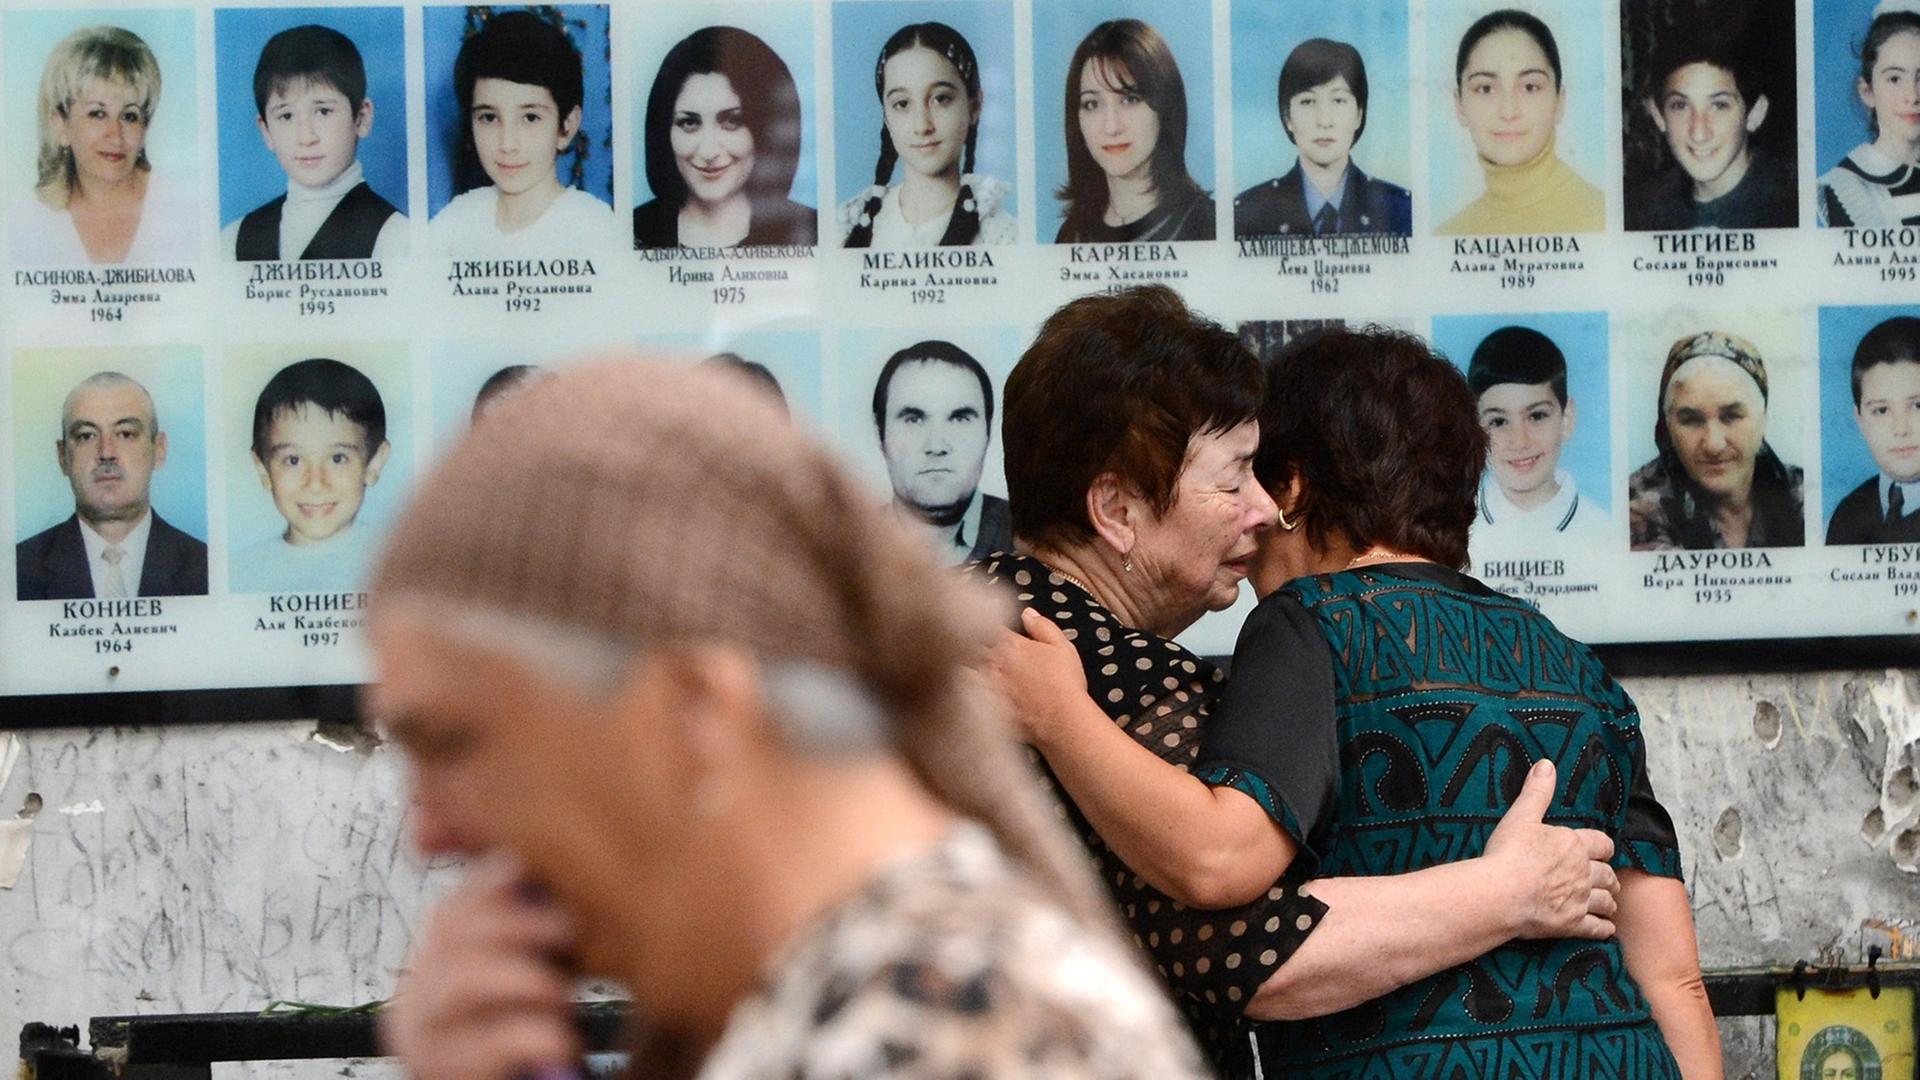 Bewohner von Beslan bei einer Gedenkveranstaltung zum 10. Jahrestag der Geiselnahme in einer Schule (am 1. September 2004), bei der mehr als 300 Menschen starben.